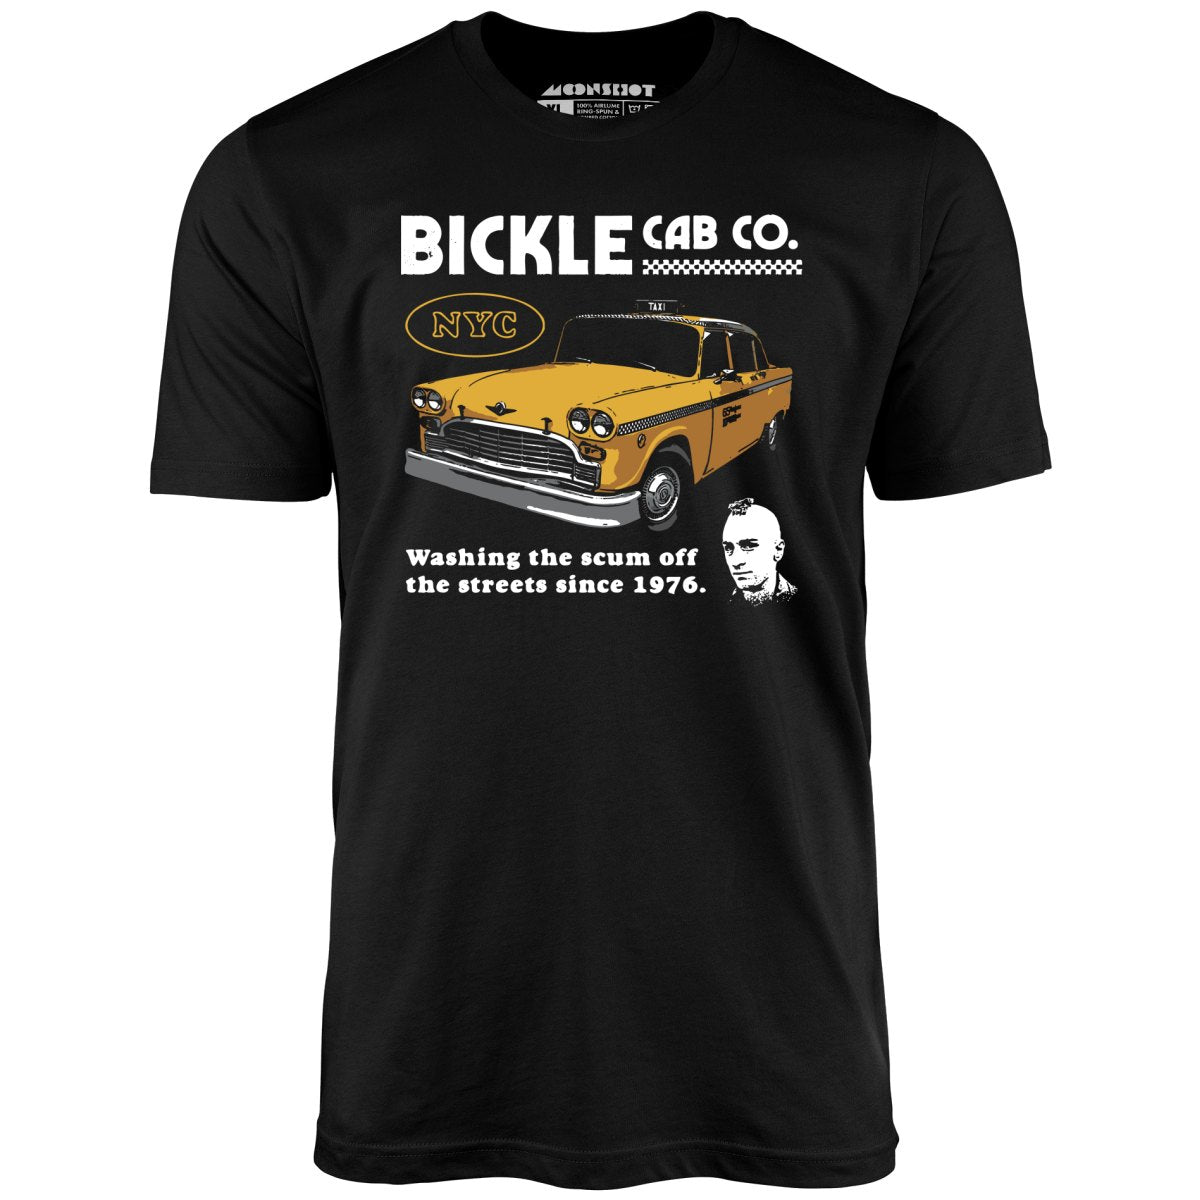 Bickle Cab Co. - Unisex T-Shirt